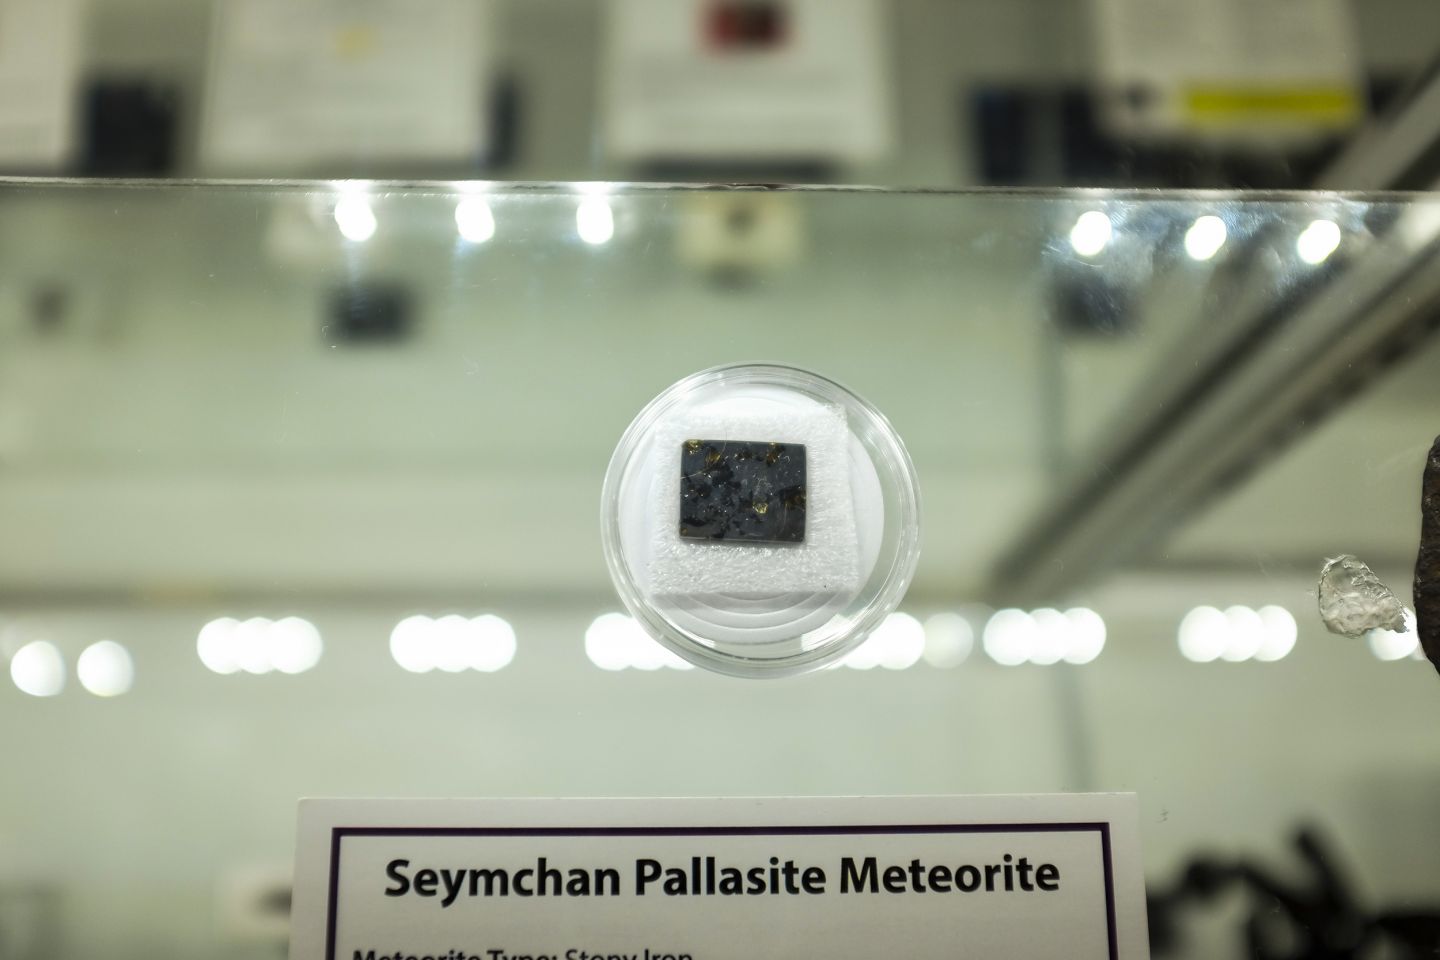 Planetario de Chimalhuacán alberga meteoritos y fragmentos de suelo marciano y lunar